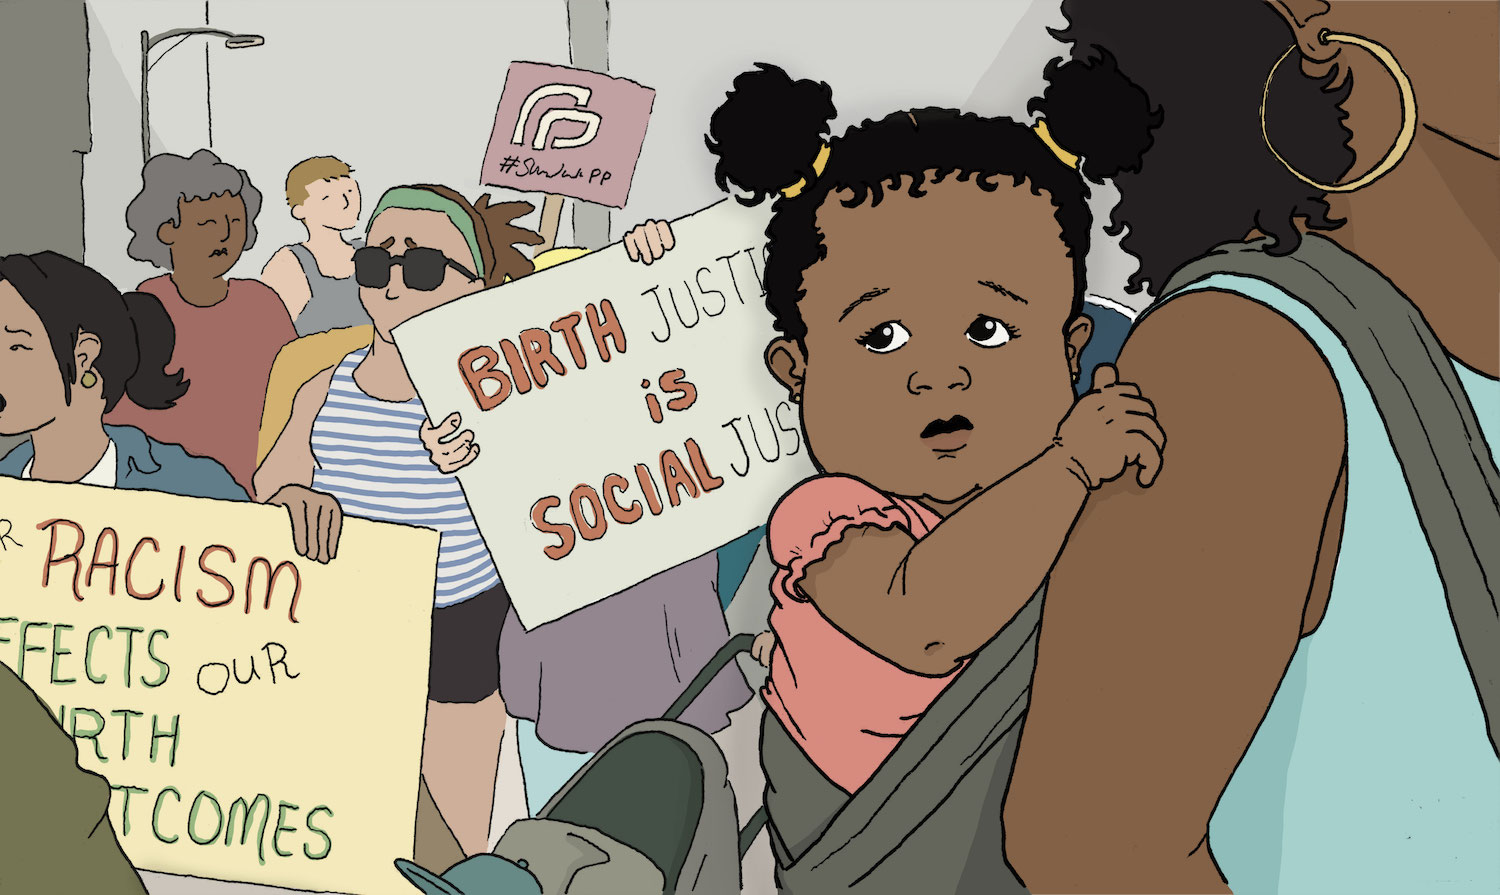 Birth Justice is Social Justice